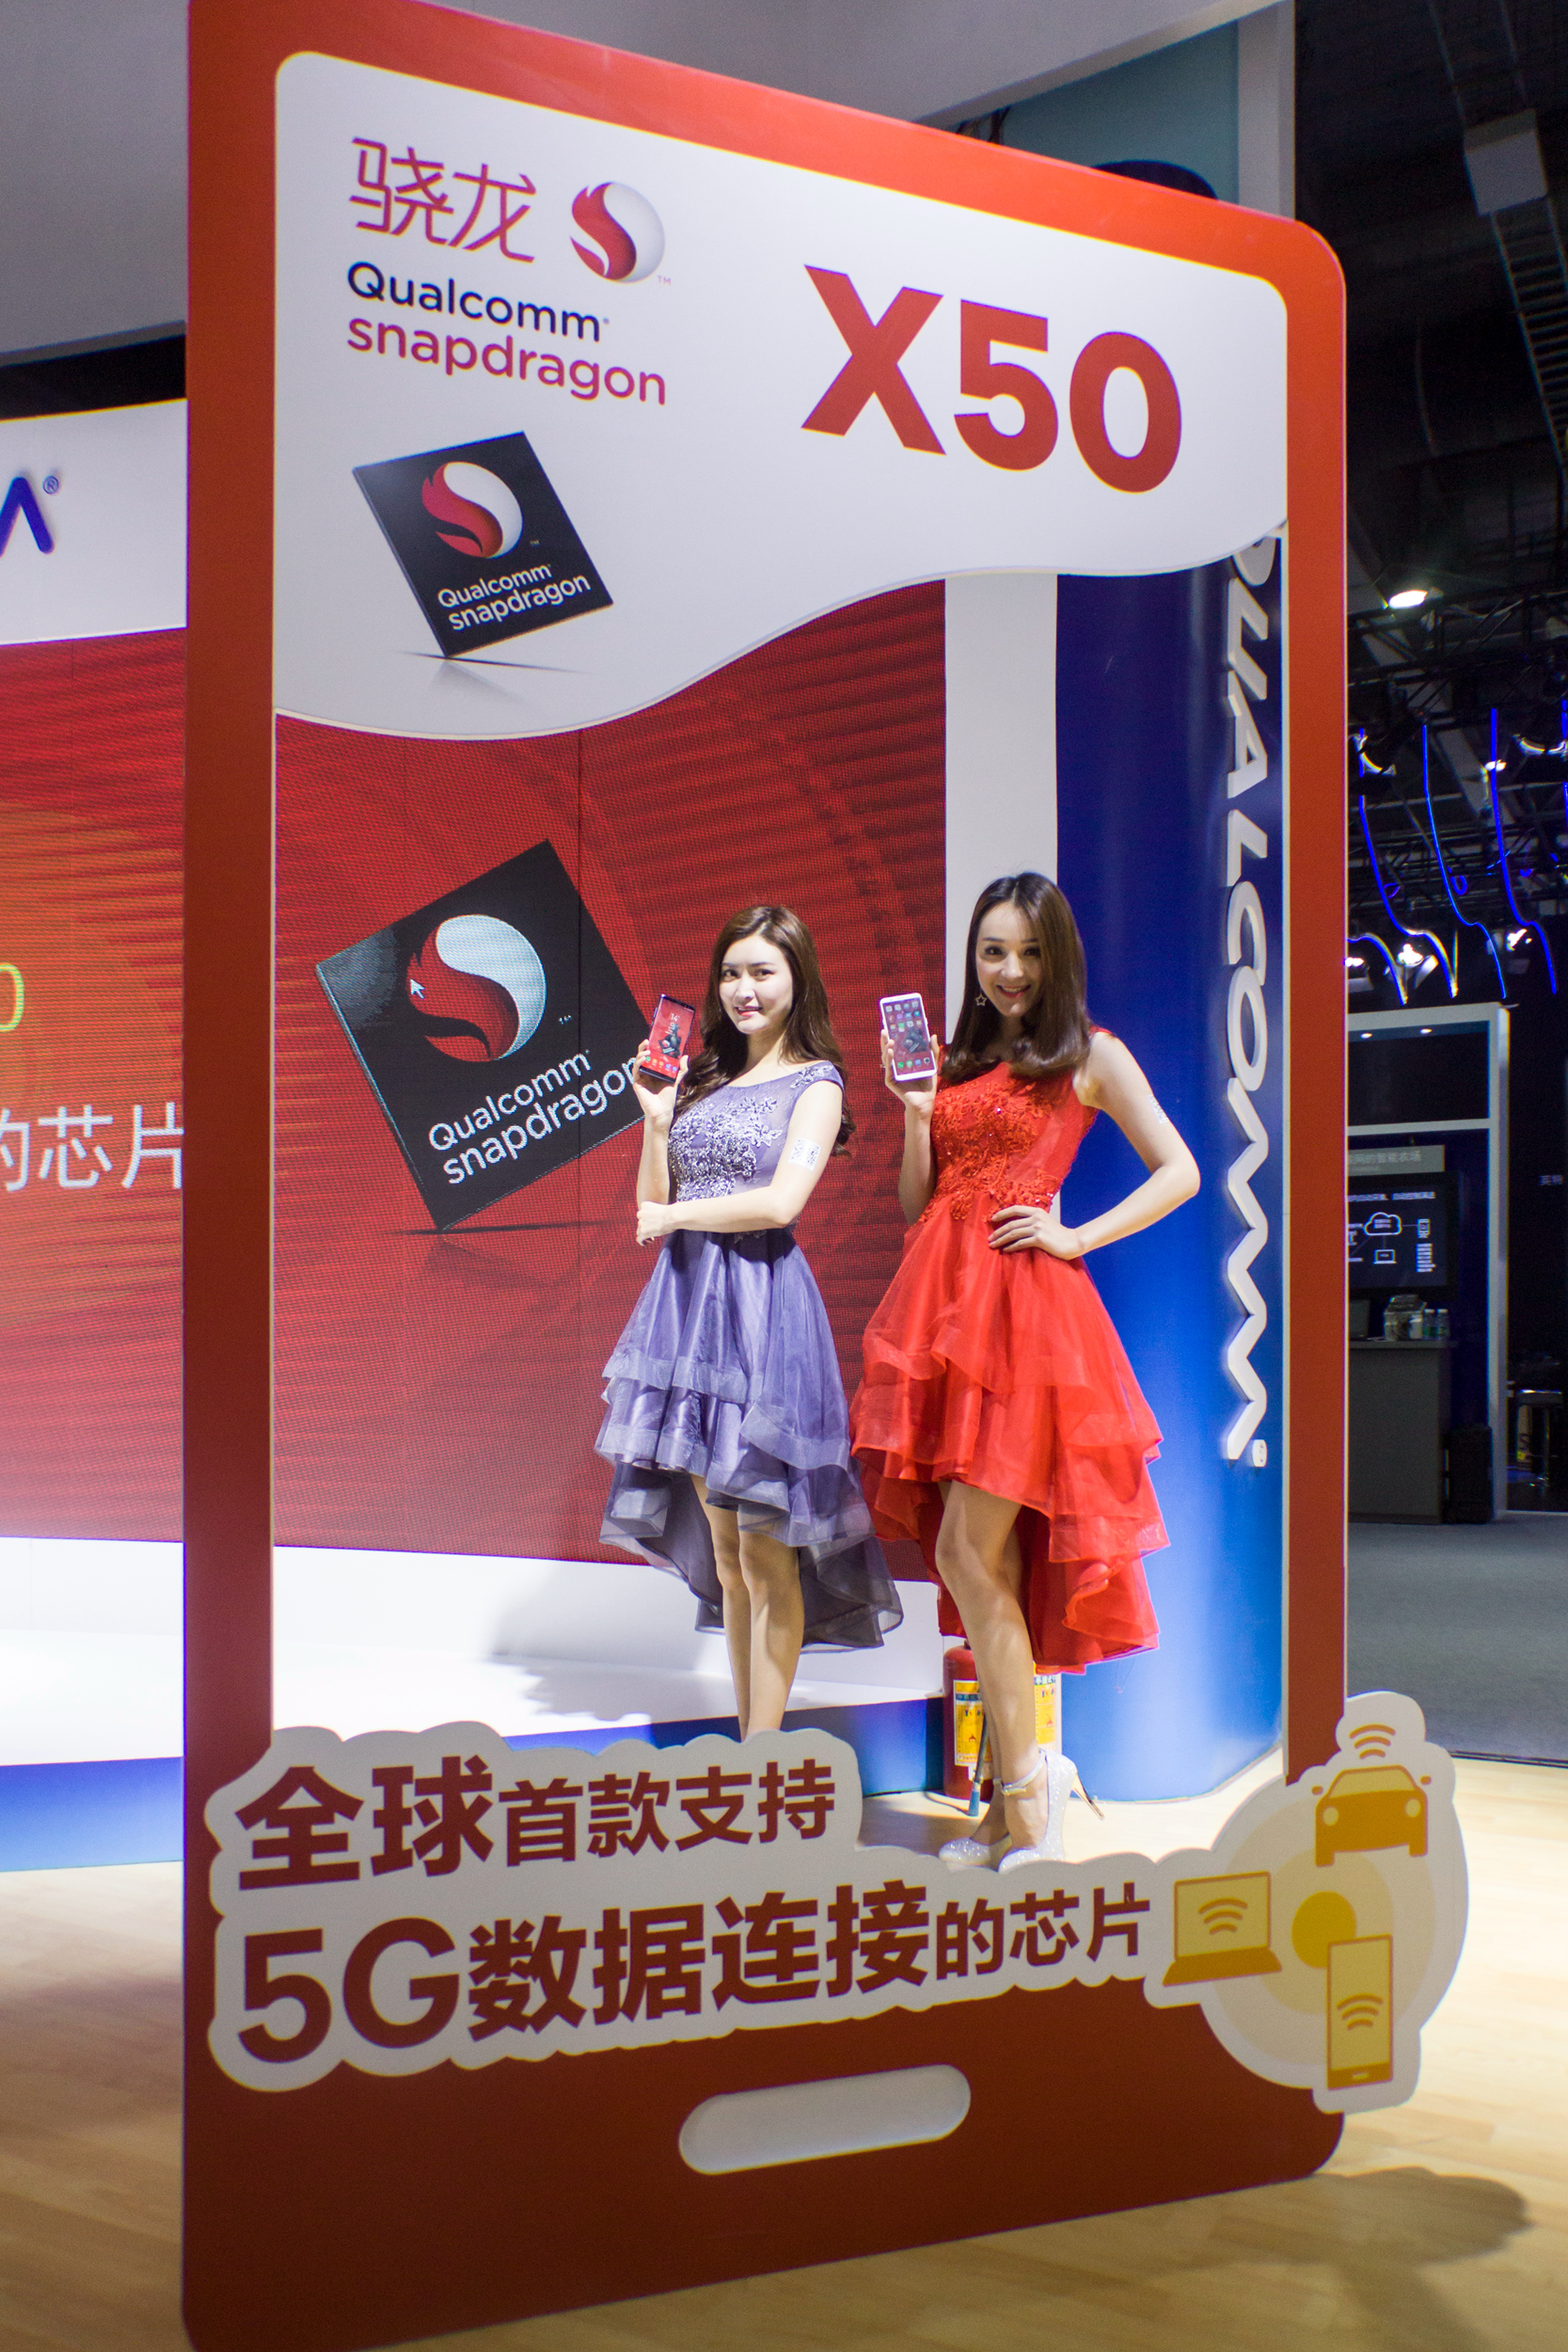 中国制造业的第一批5G手机上将在今年春天发售 远销全世界